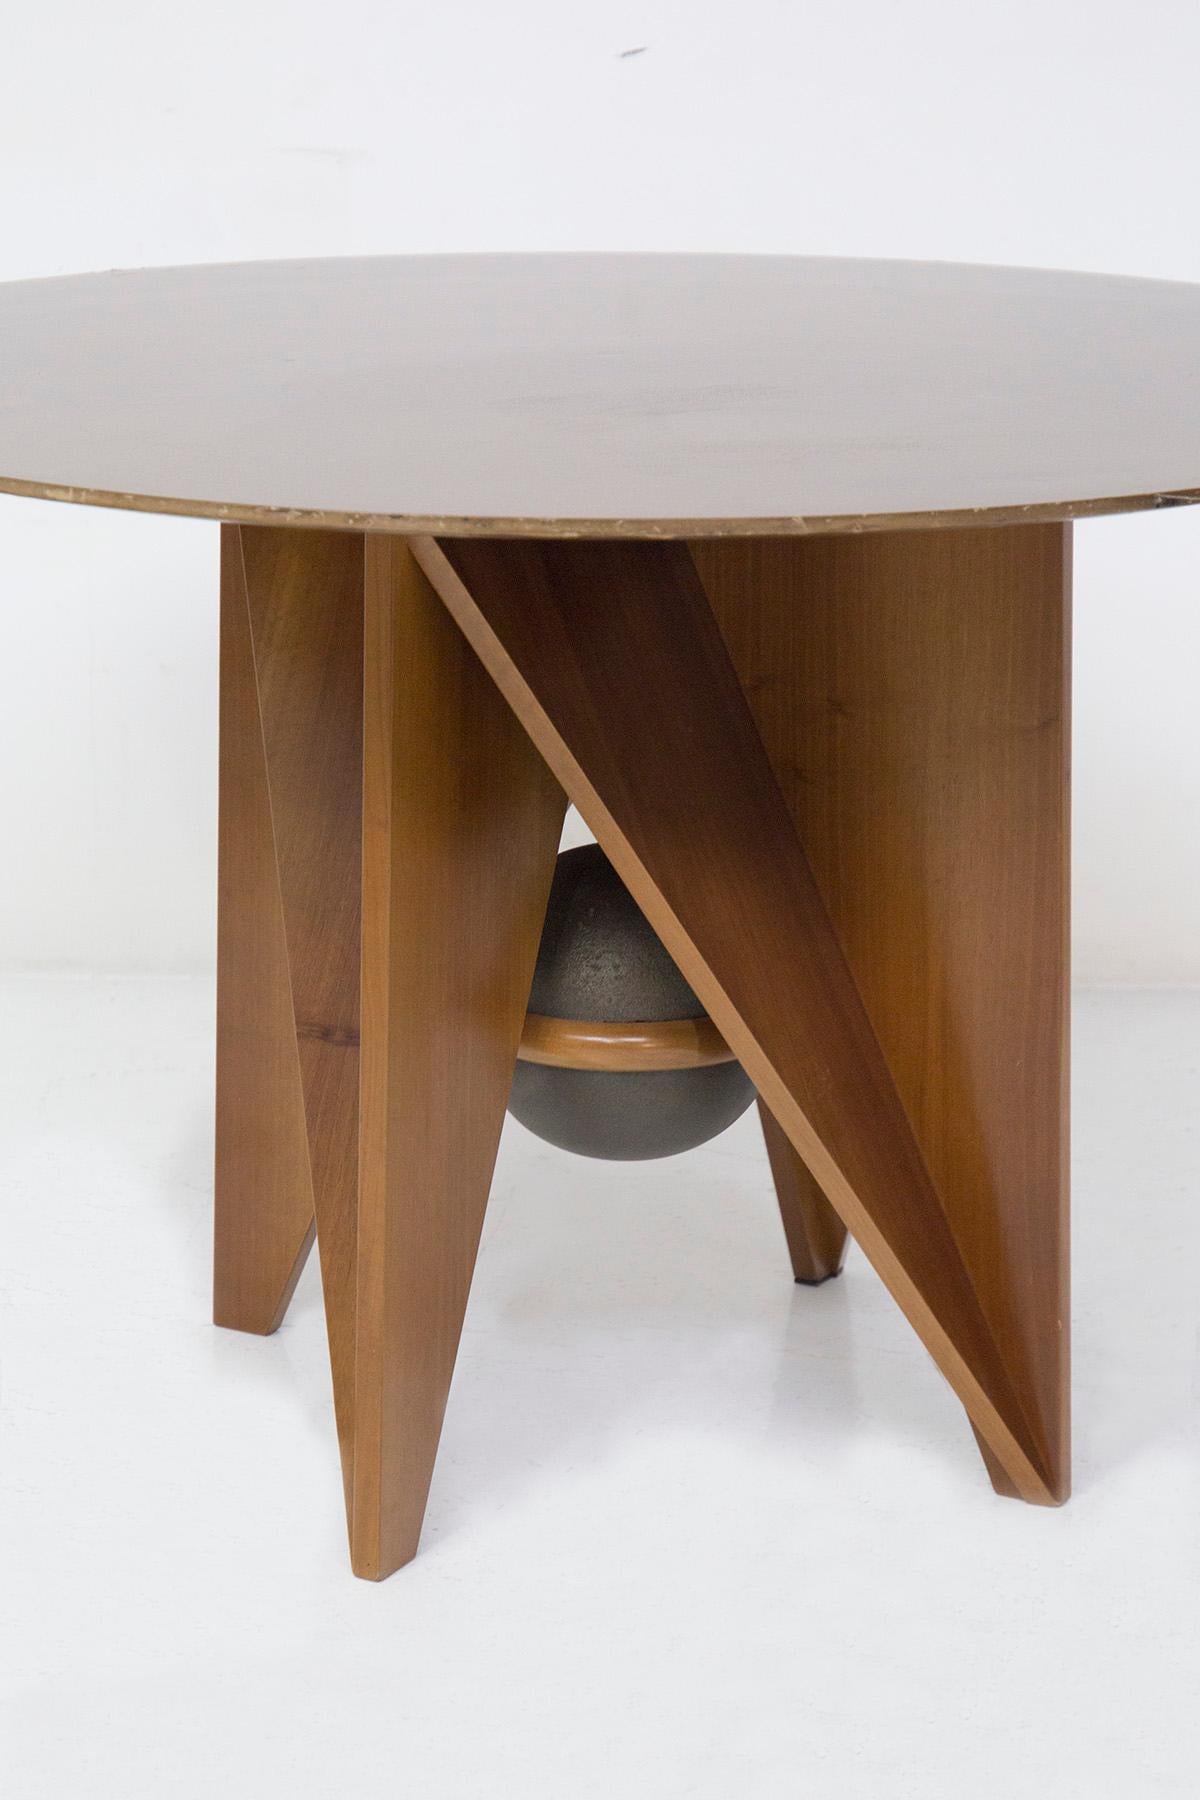 Magnifique table prototype conçue par Paolo et Adriano Suman pour le fabricant italien Giorgetti dans les années 1980.
La table est entièrement en bois et présente des formes très géométriques et distinctives. Il y a 4 pieds porteurs et ils ont de